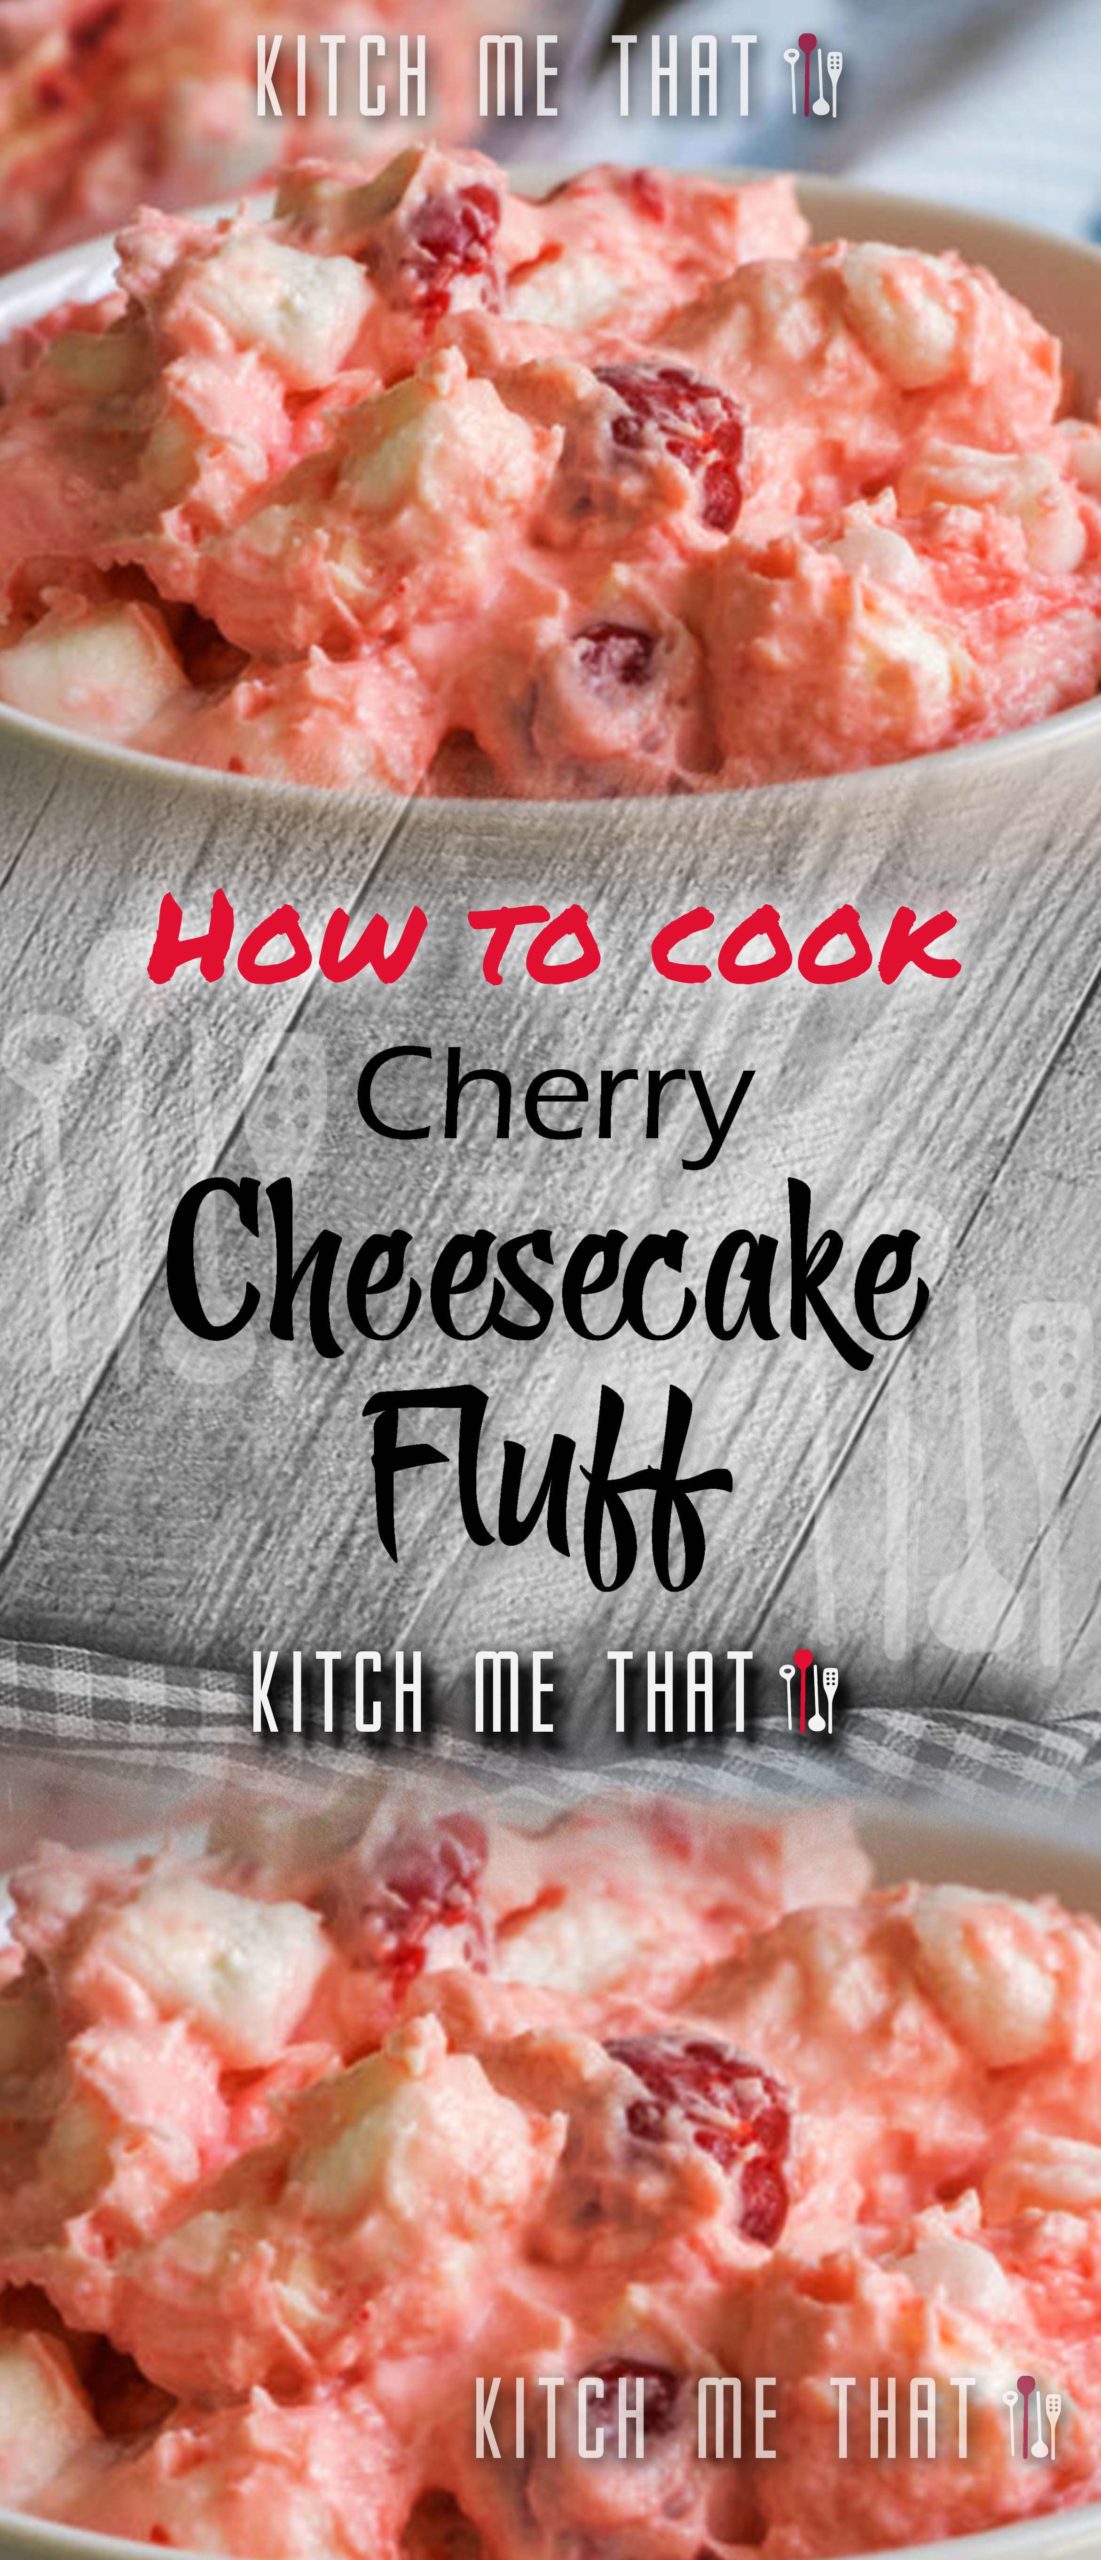 Cherry Cheesecake Fluff